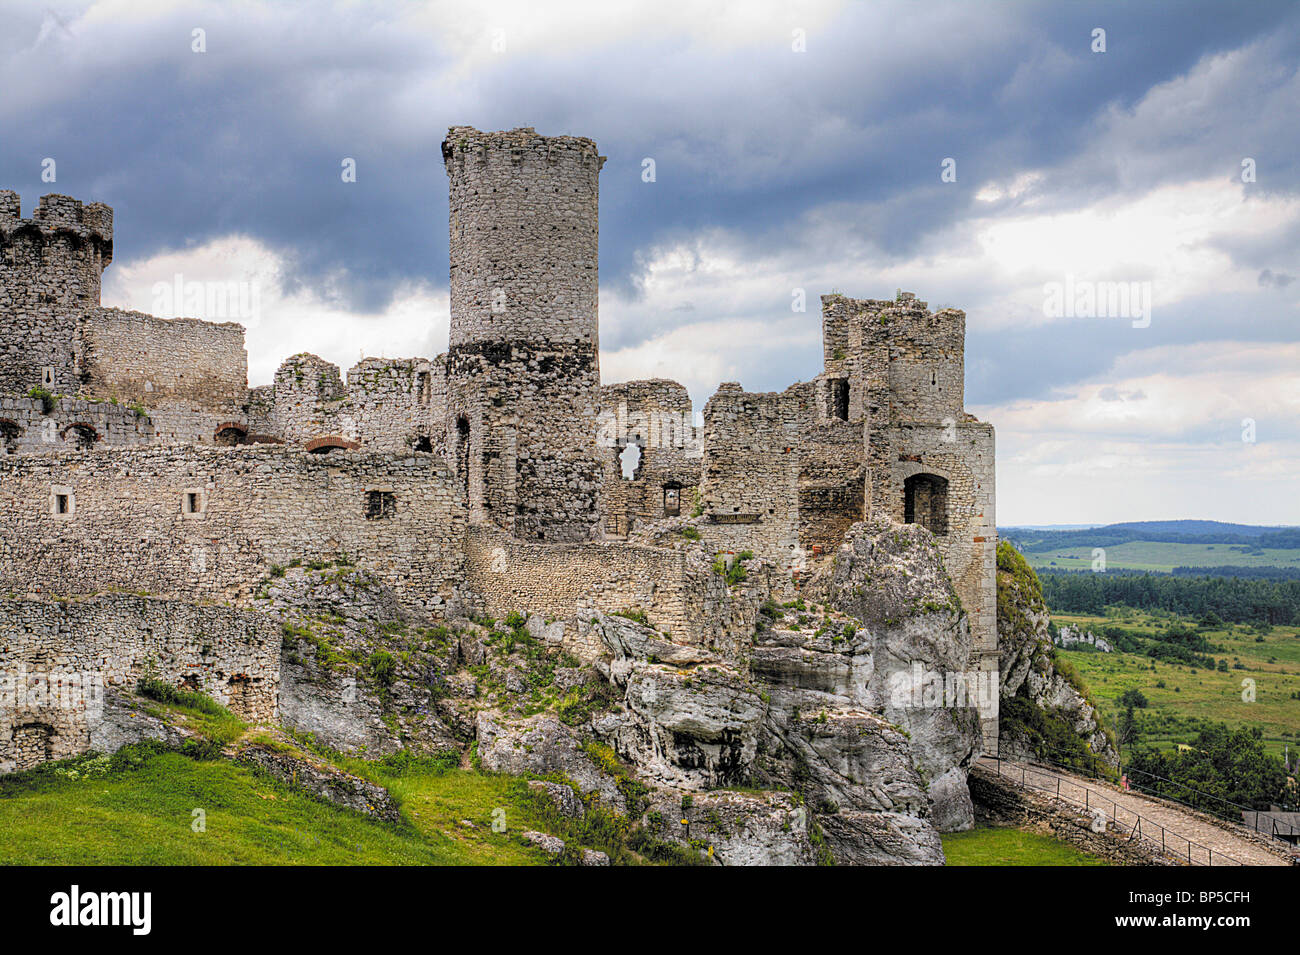 L'ancien château ruines de fortifications Ogrodzieniec, Pologne. Image HDR. Banque D'Images